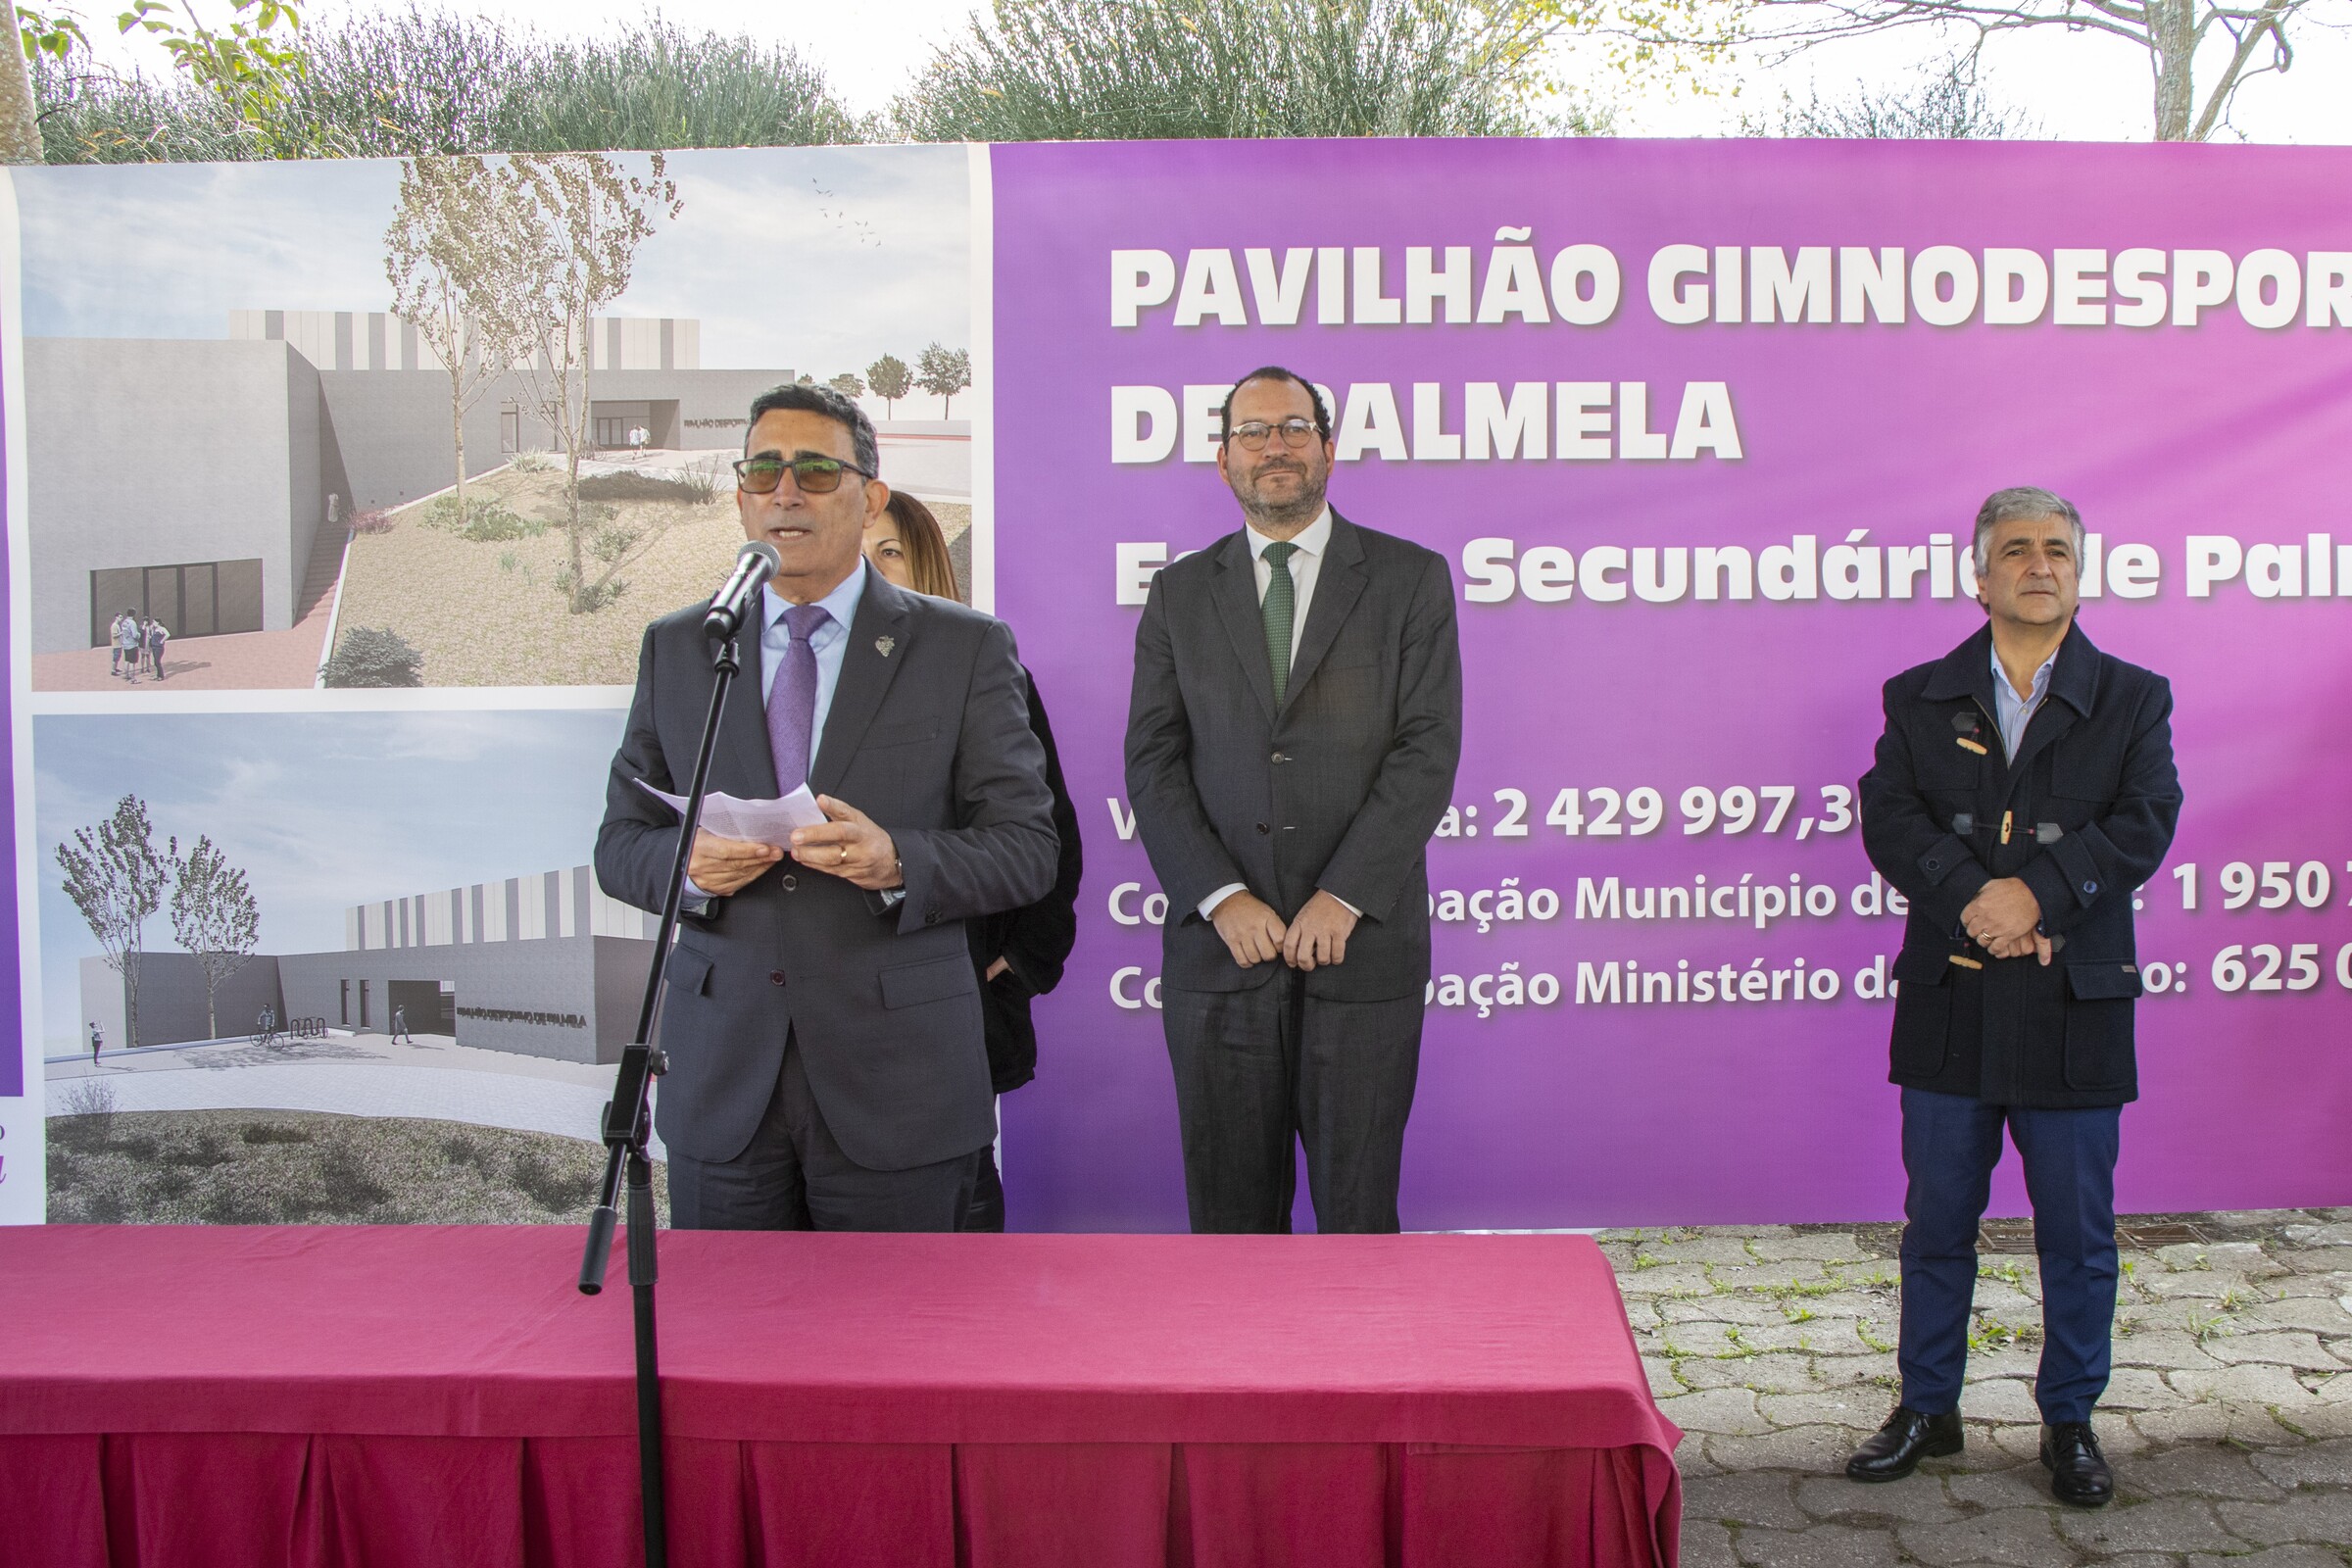 Construção do Pavilhão Gimnodesportivo de Palmela já começou